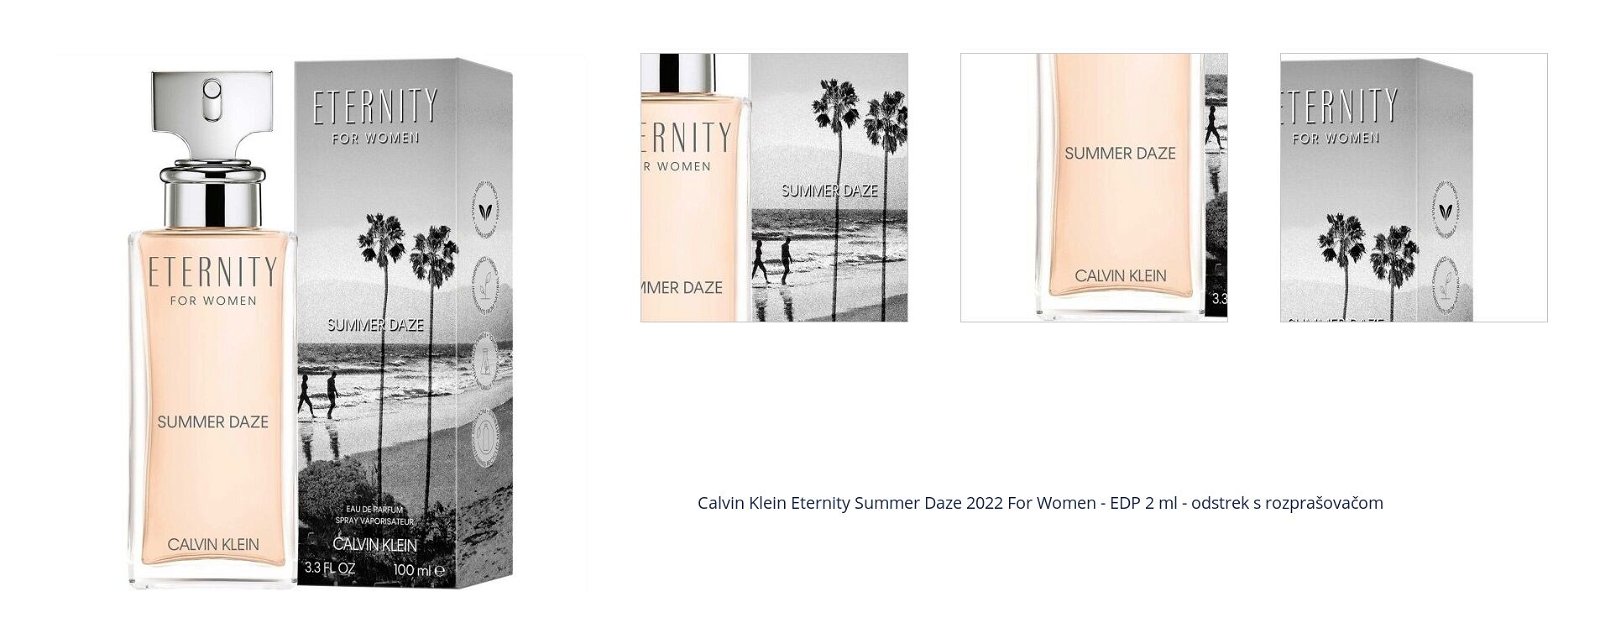 Calvin Klein Eternity Summer Daze 2022 For Women - EDP 2 ml - odstrek s rozprašovačom 7